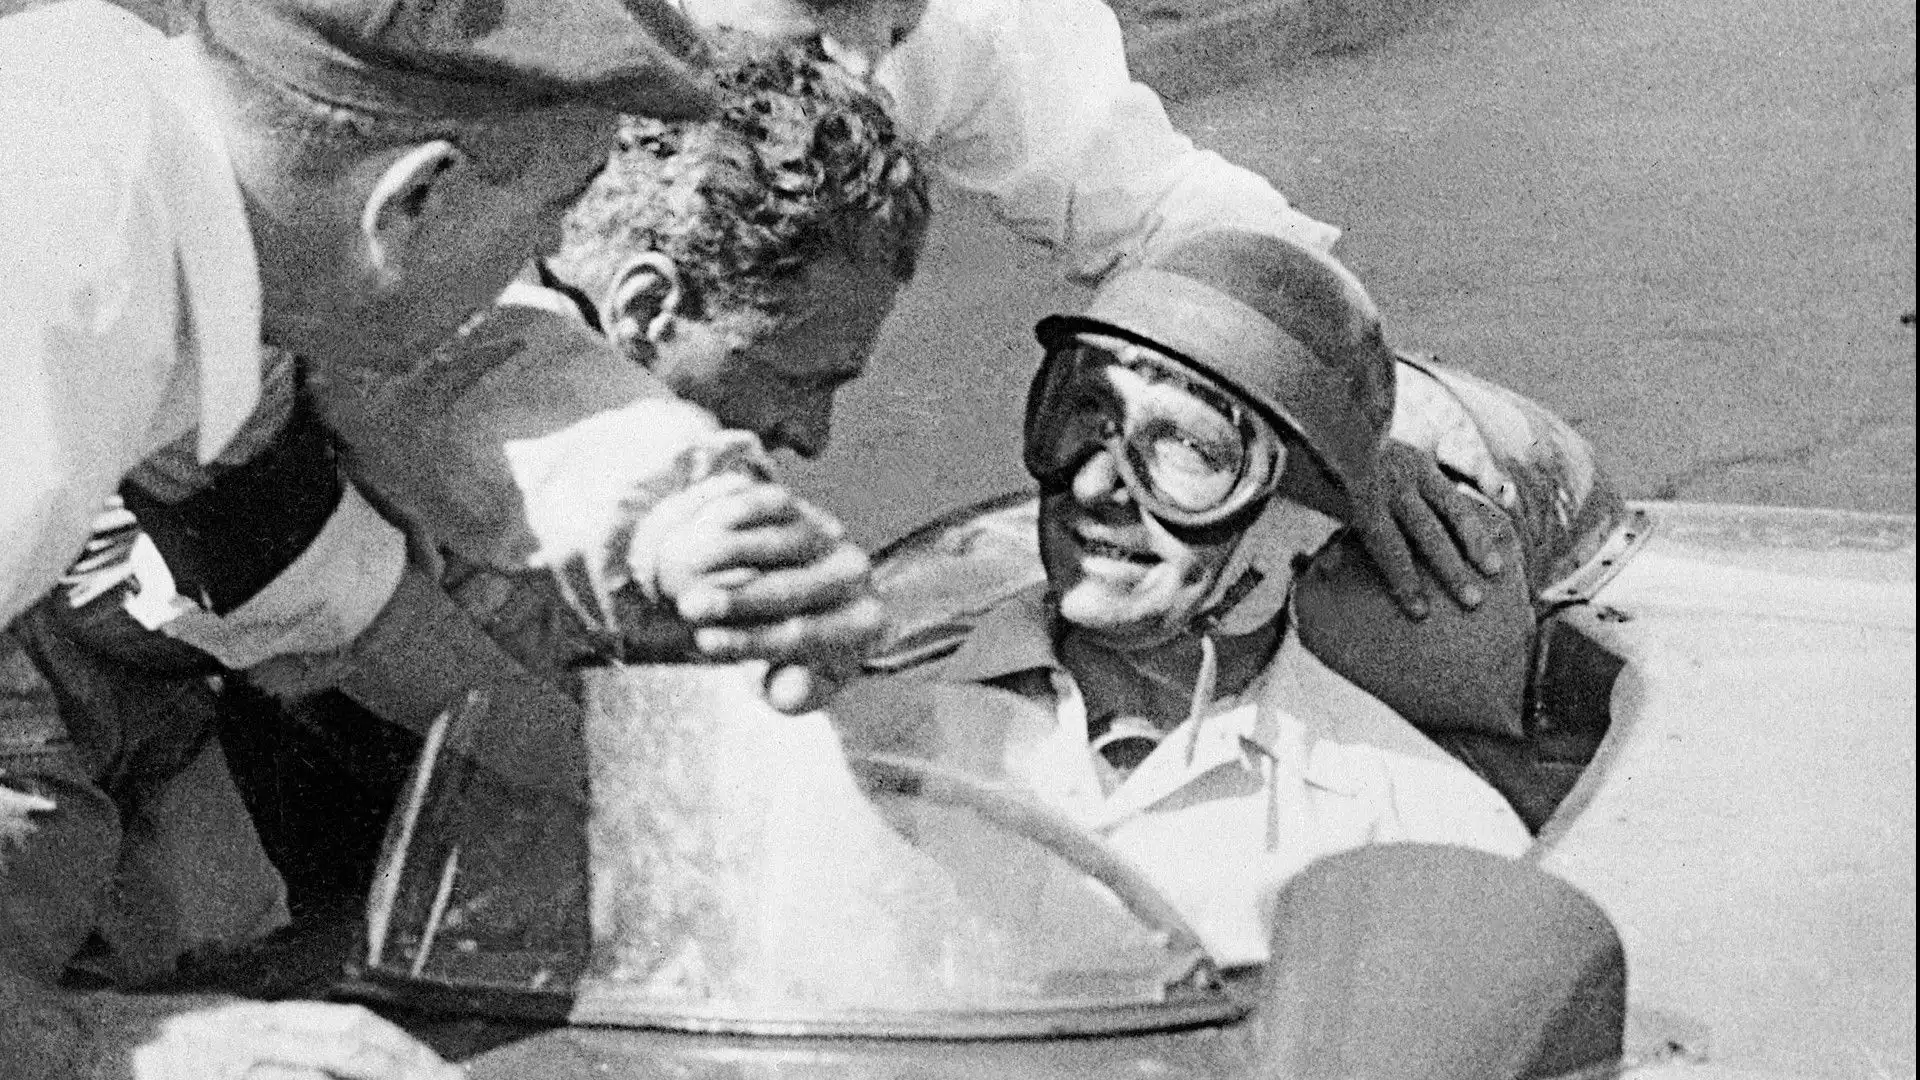 3- Juan Manuel Fangio